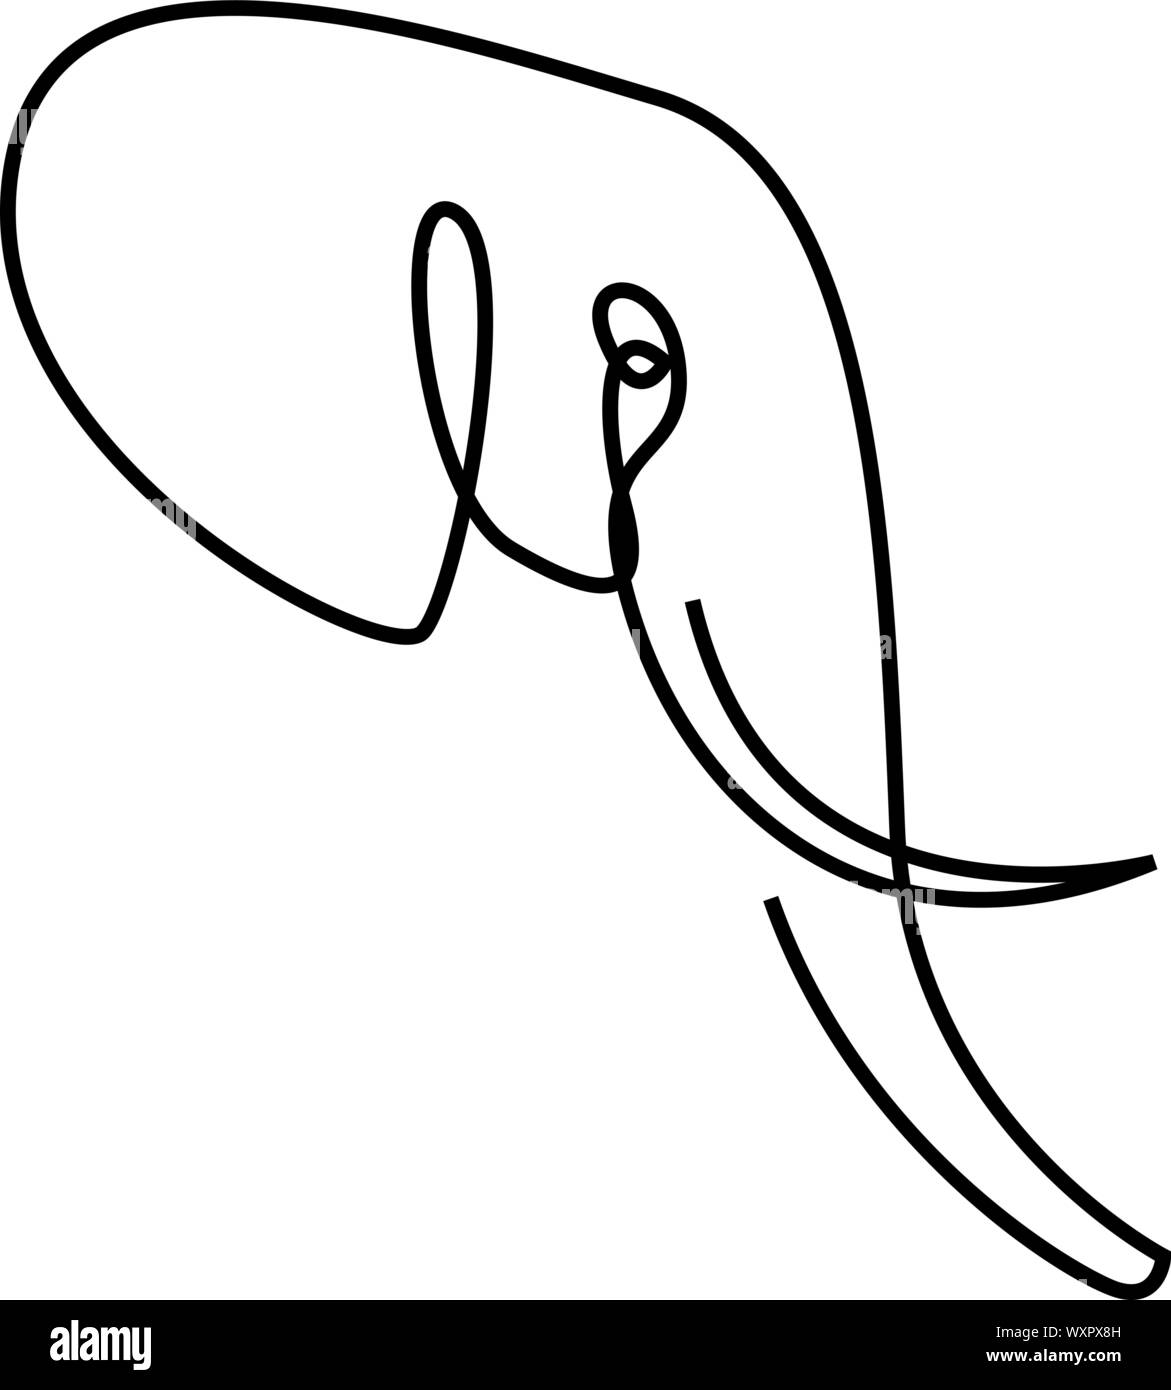 Linea continua di testa di elefante. Linea singola illustrazione vettoriale. Stile minimal Illustrazione Vettoriale